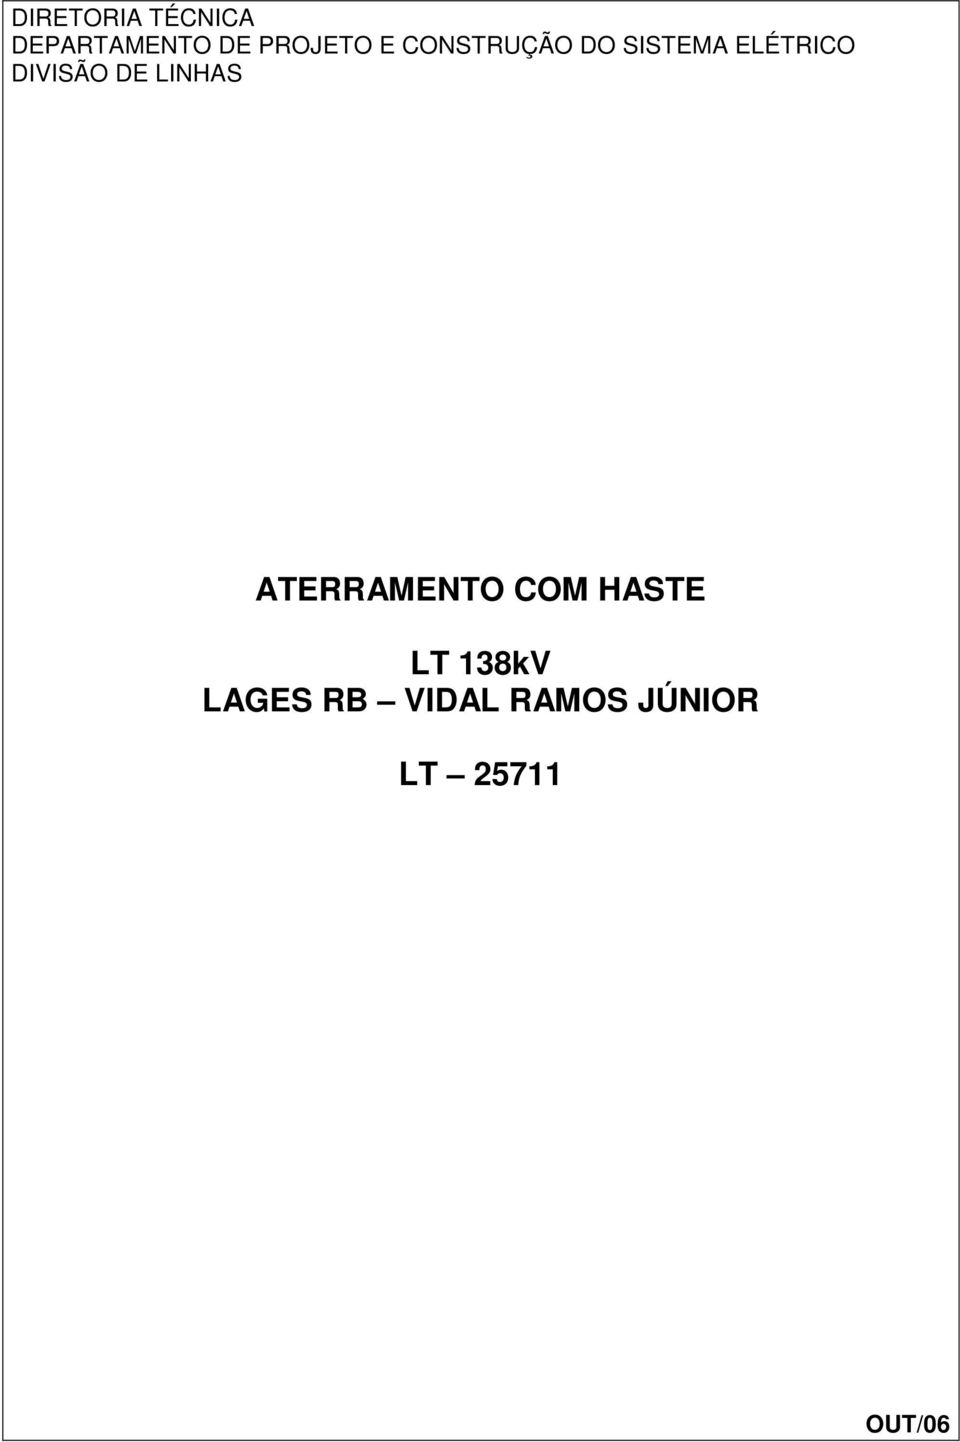 DE LINHAS ATERRAMENTO COM HASTE LT 138kV